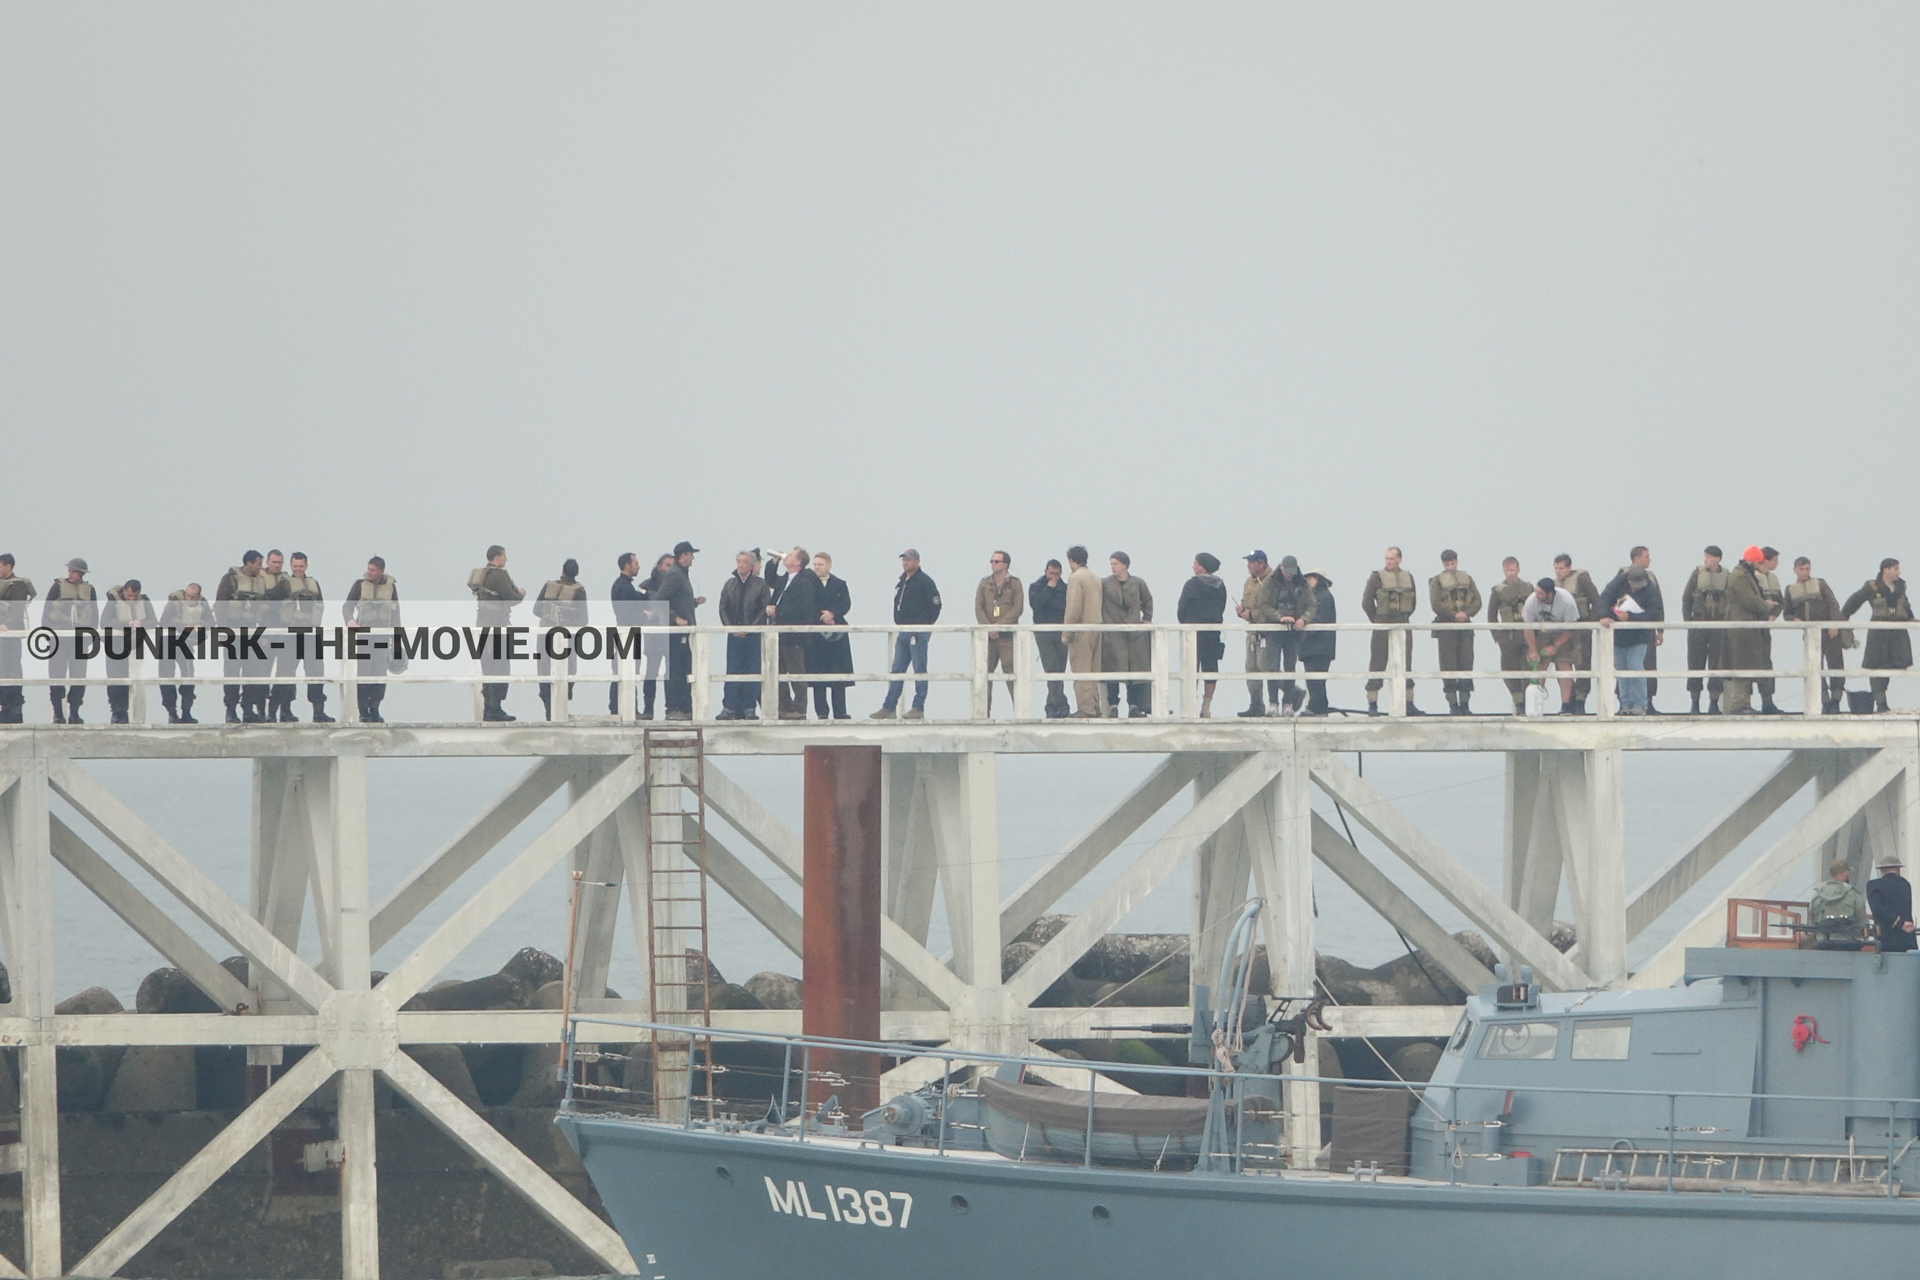 Fotos con cielo gris, extras, HMS Medusa - ML1387, muelle del ESTE, Kenneth Branagh, mares calma, Christopher Nolan, Nilo Otero,  durante el rodaje de la película Dunkerque de Nolan